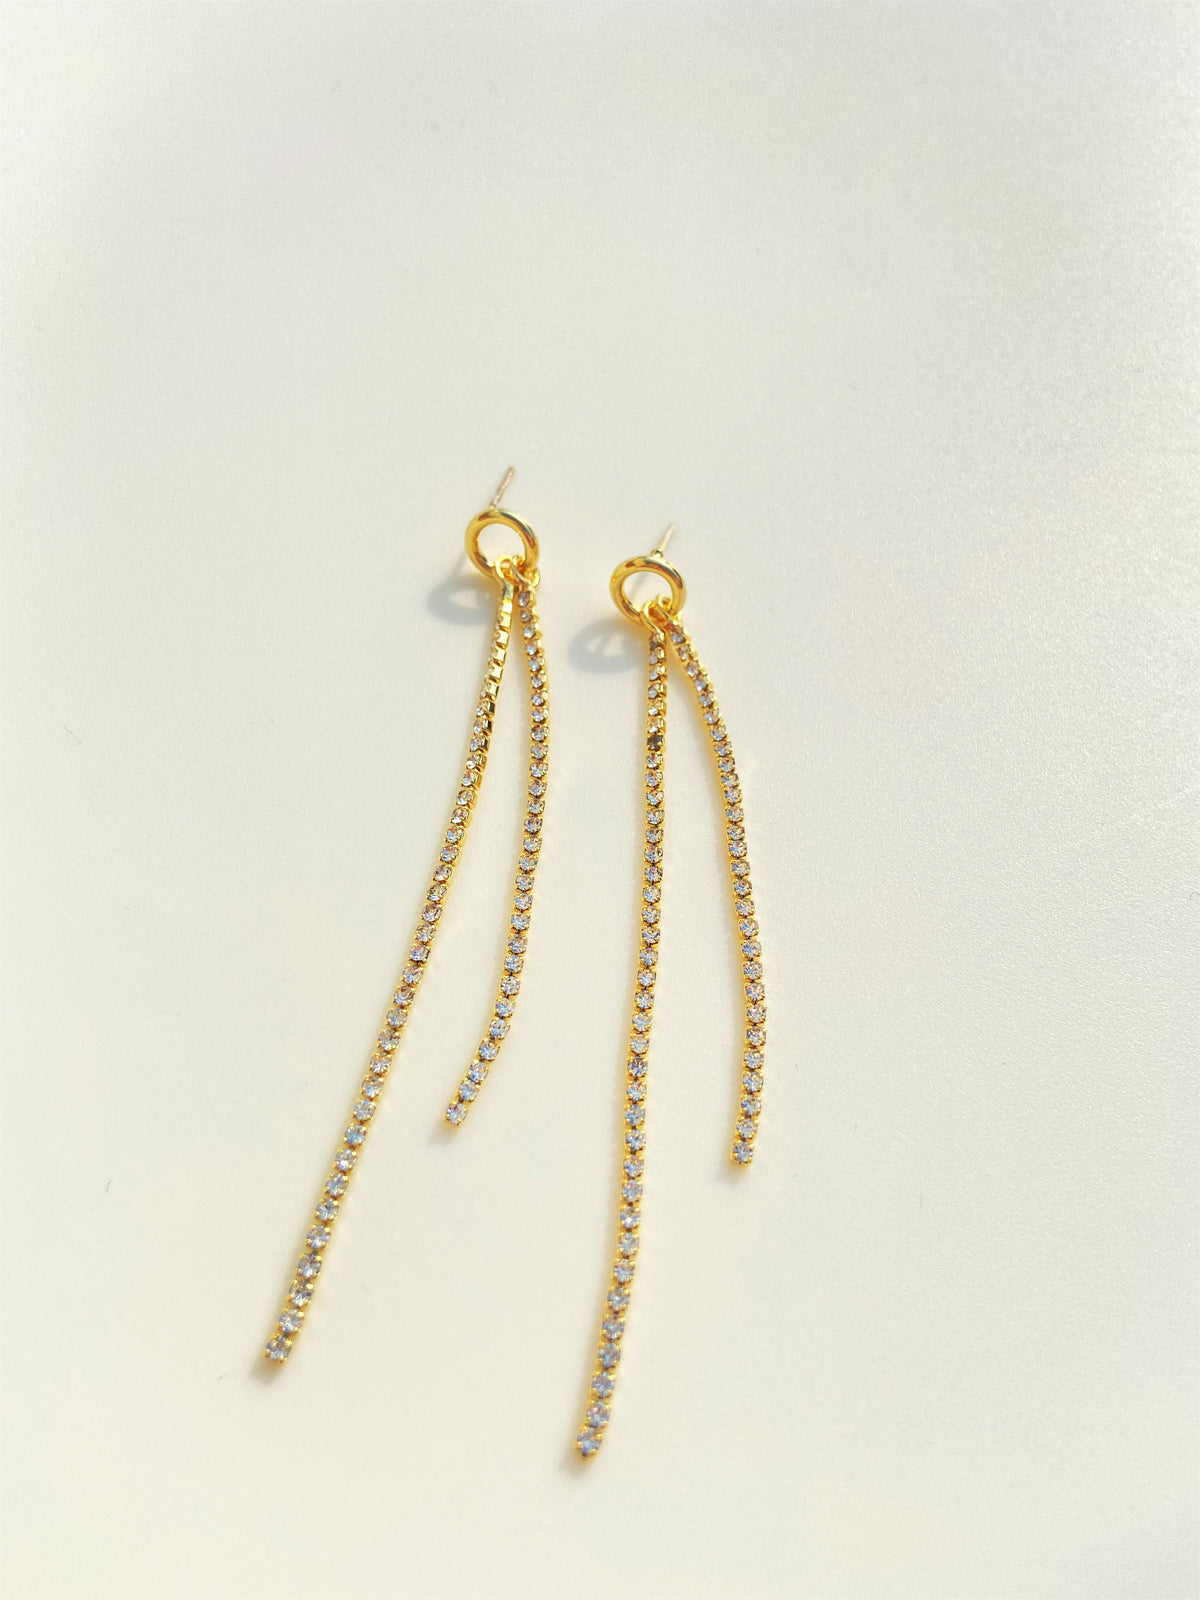 Vintage Gold Rhinestone Tassel Hoop Earrings